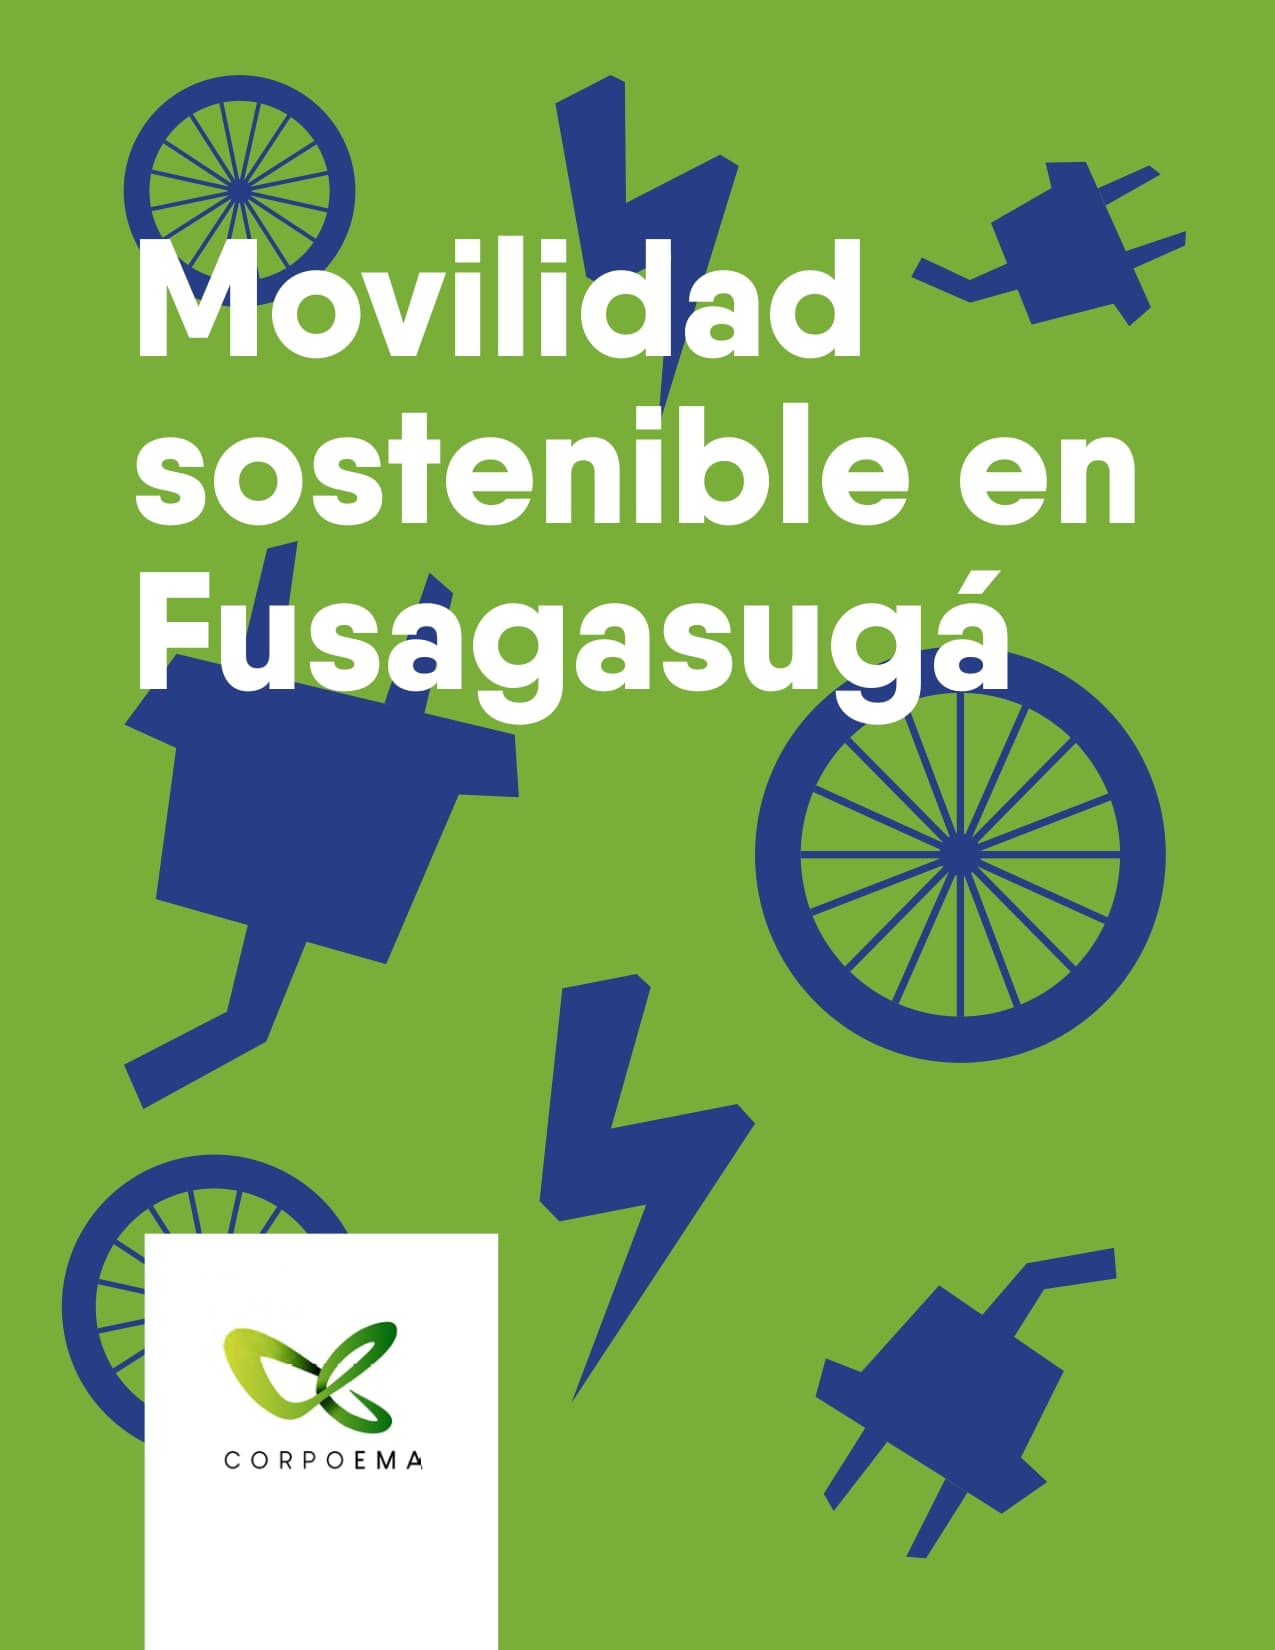 Movilidad Sostenible en Fusagasugá, Cundinamarca, a partir de la instalación y puesta en funcionamiento de estaciones de bicicletas mecánicas y eléctricas con sistemas de energía solar